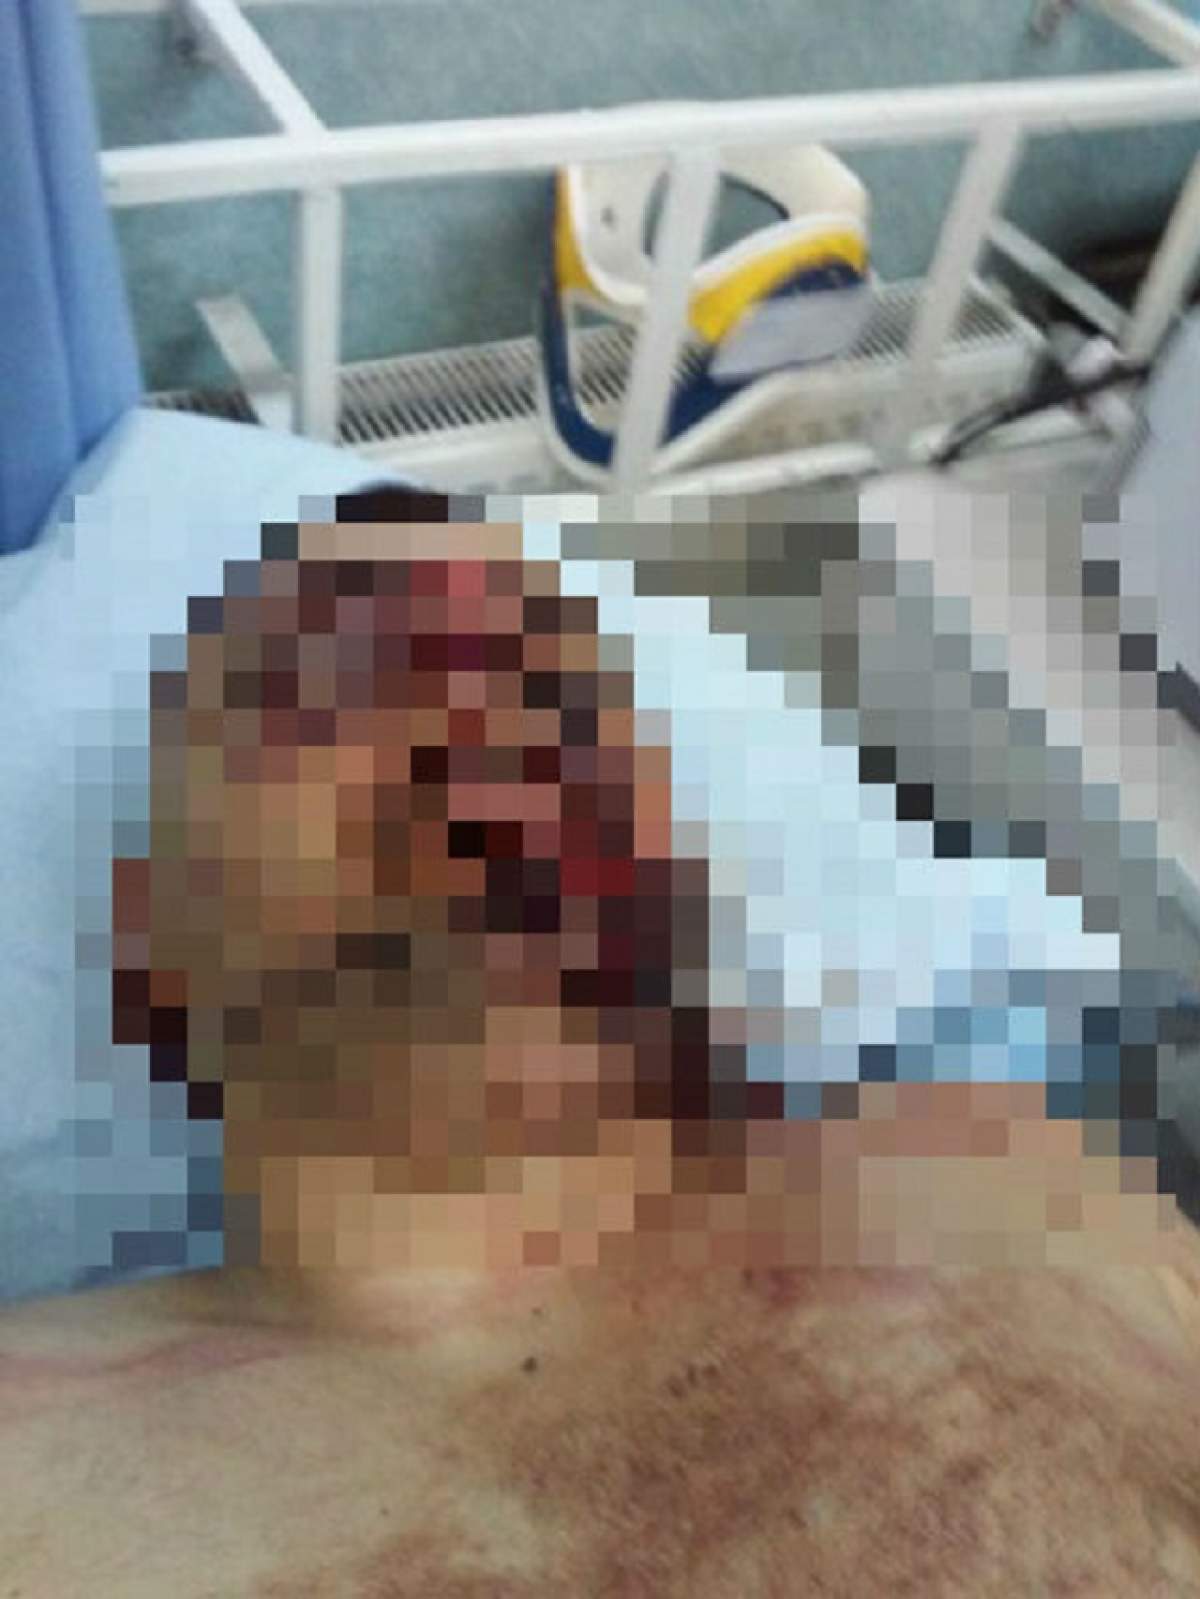 Bătăi cu săbii în faţa sediului IPJ Timiş! Un bărbat a ajuns la spital cu sabia înfiptă în cap! Imagini explicite terifiante